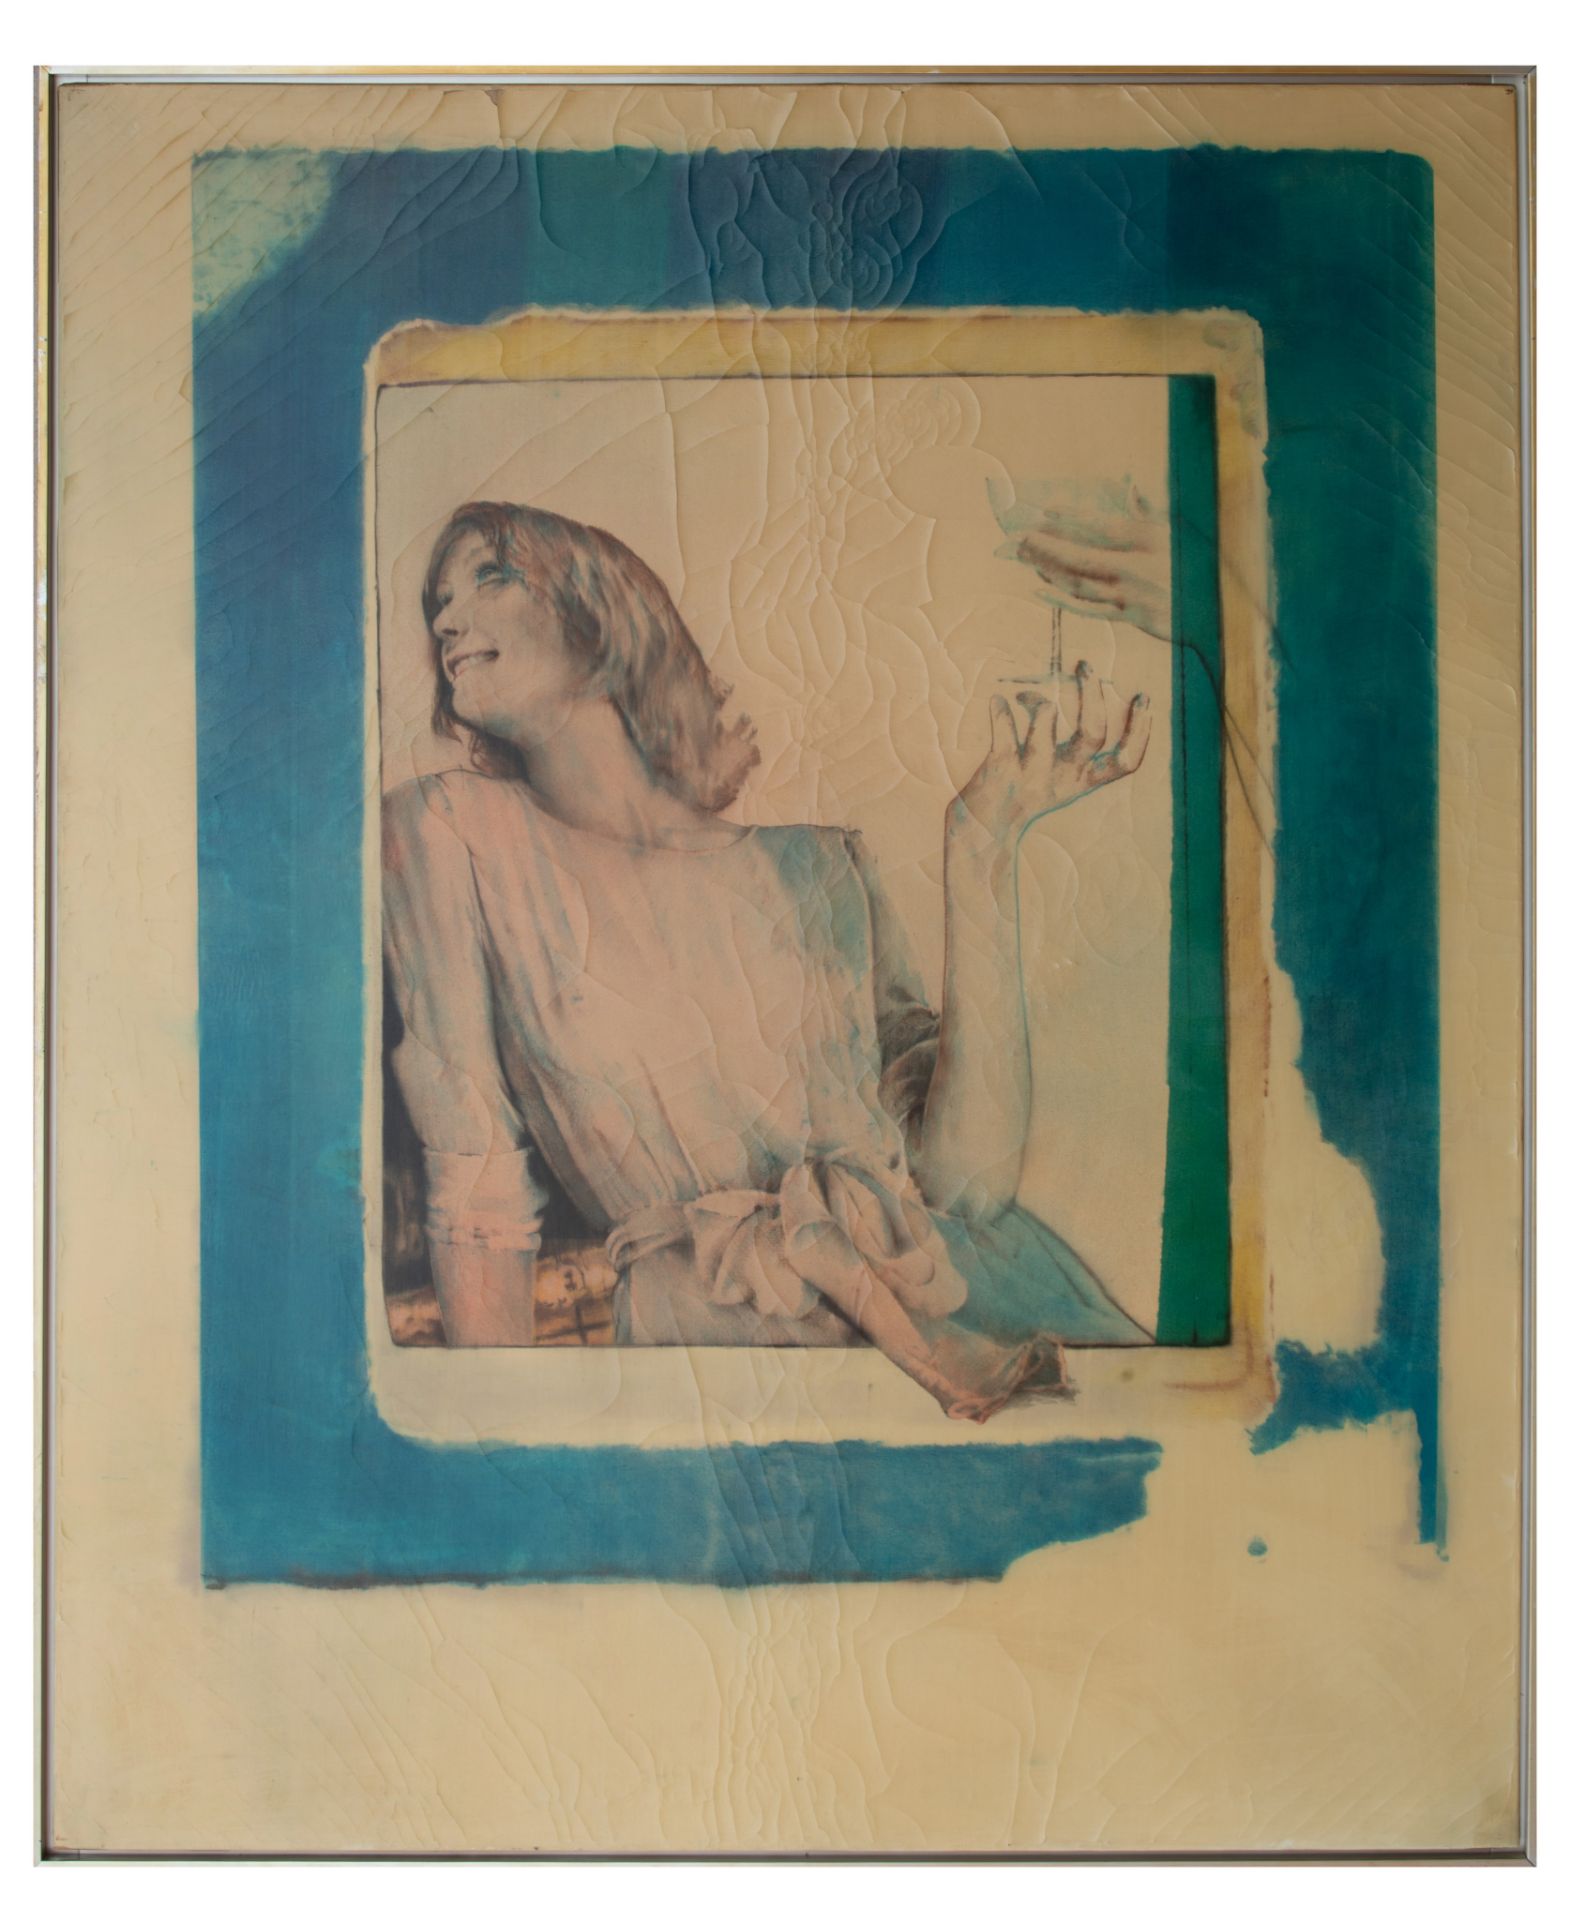 Pol Mara (1920-1998), 'The Fragile Moments', 1974, oil on canvas, 162 x 195 cm - Bild 2 aus 5